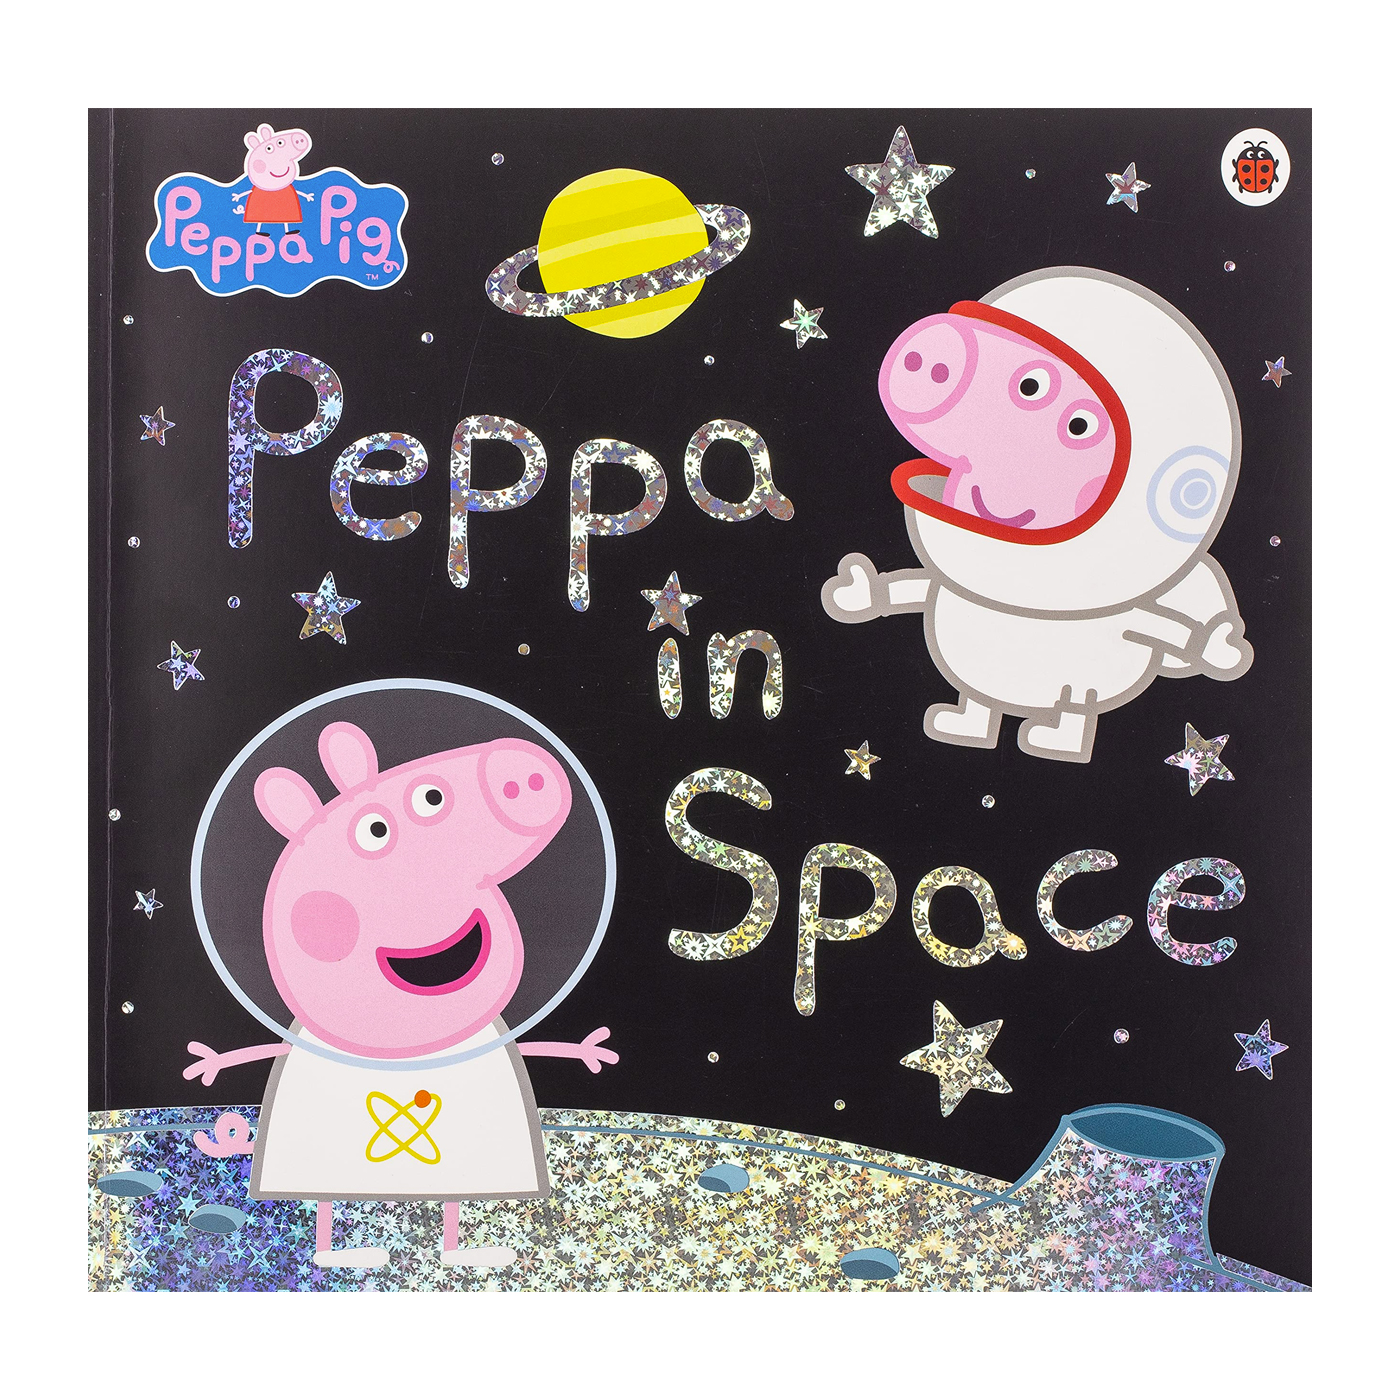  Peppa Pig: Peppa In Space